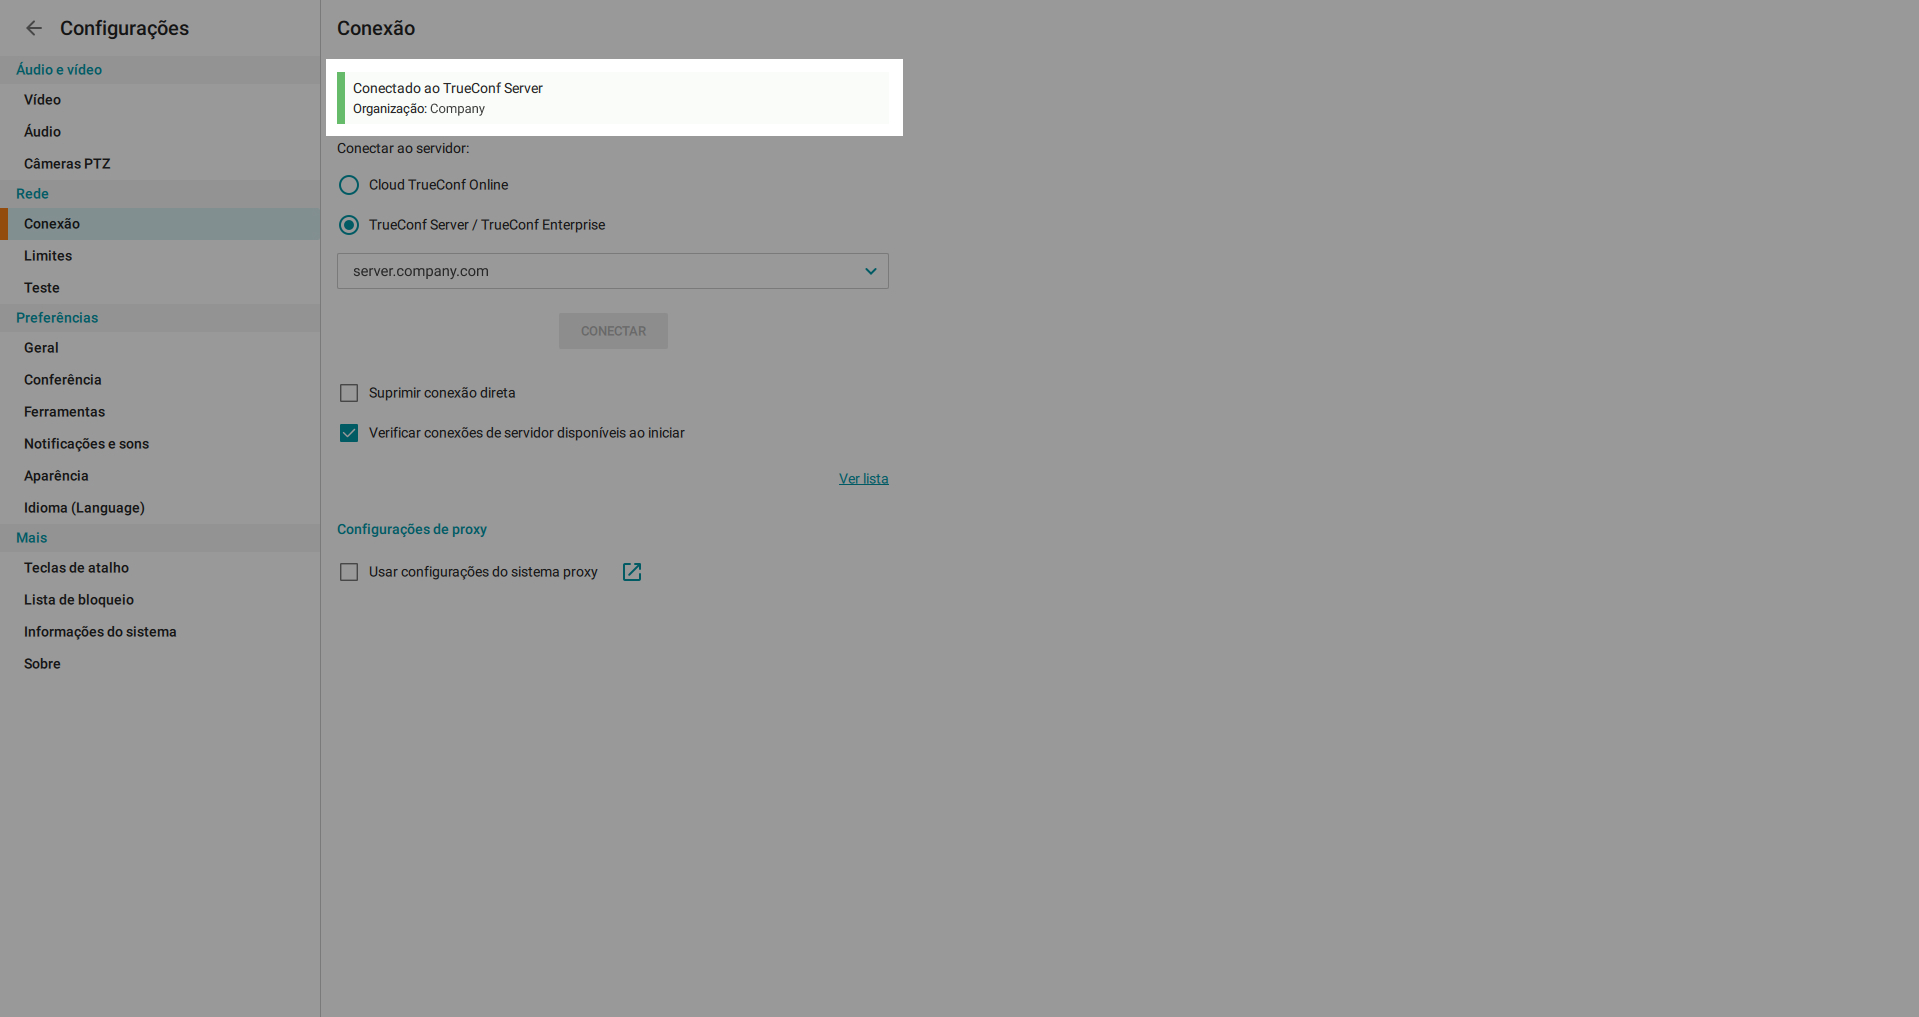 TrueConf 8.3 para Windows: Novo recurso baseado em IA, anotações sobre o conteúdo e compartilhamento de arquivos de vídeo 29